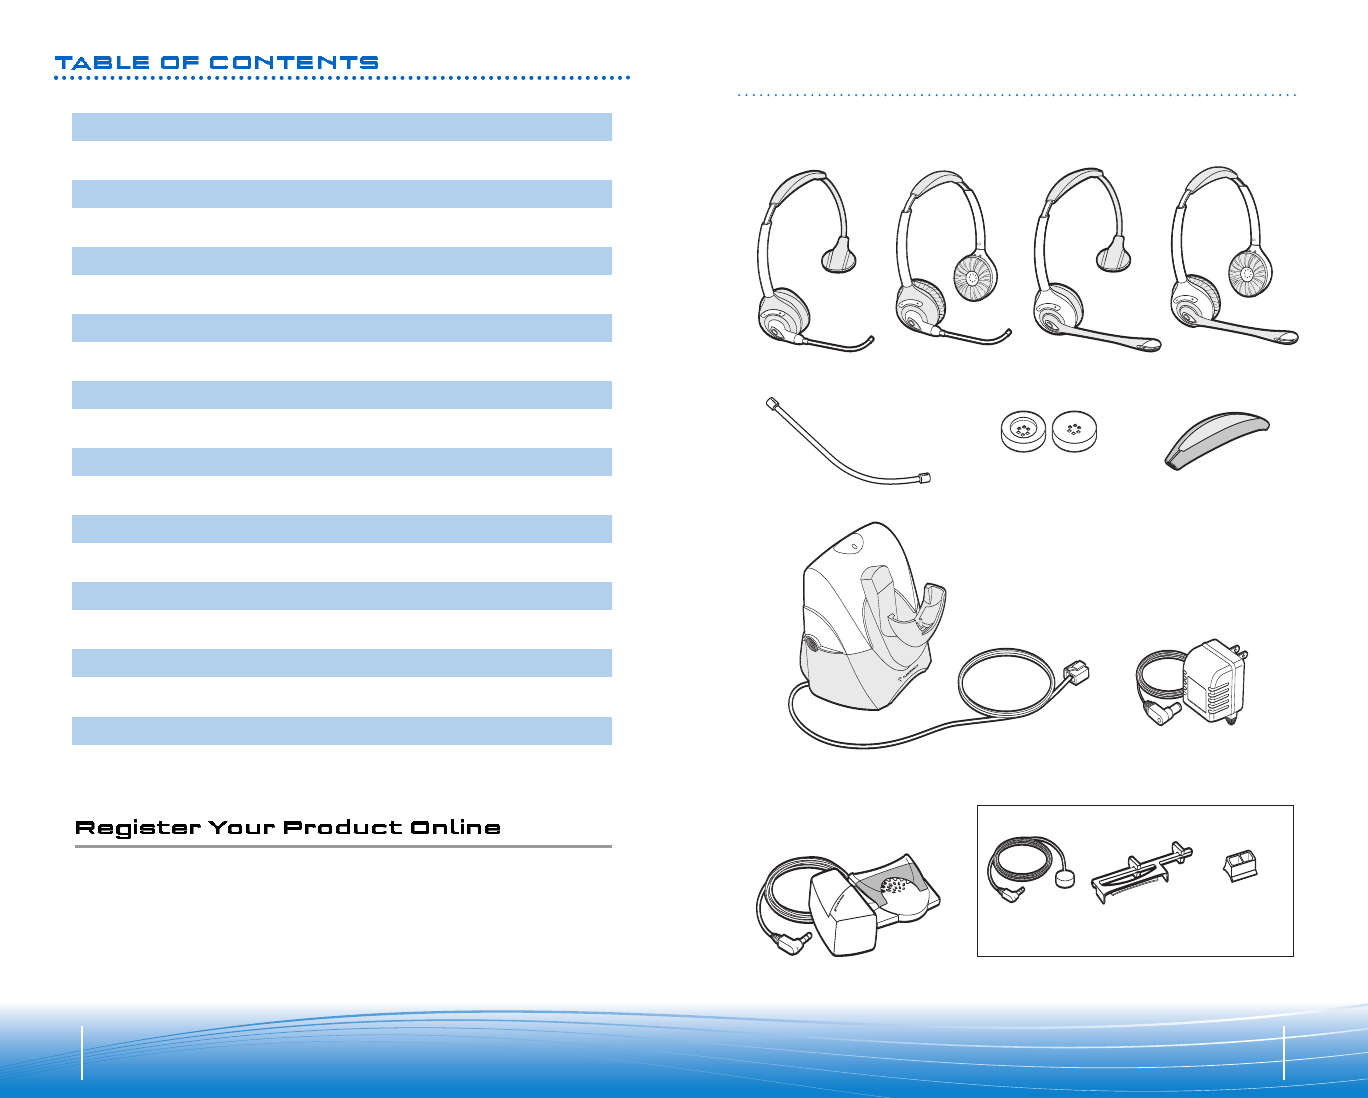 plantronics wireless headset manual